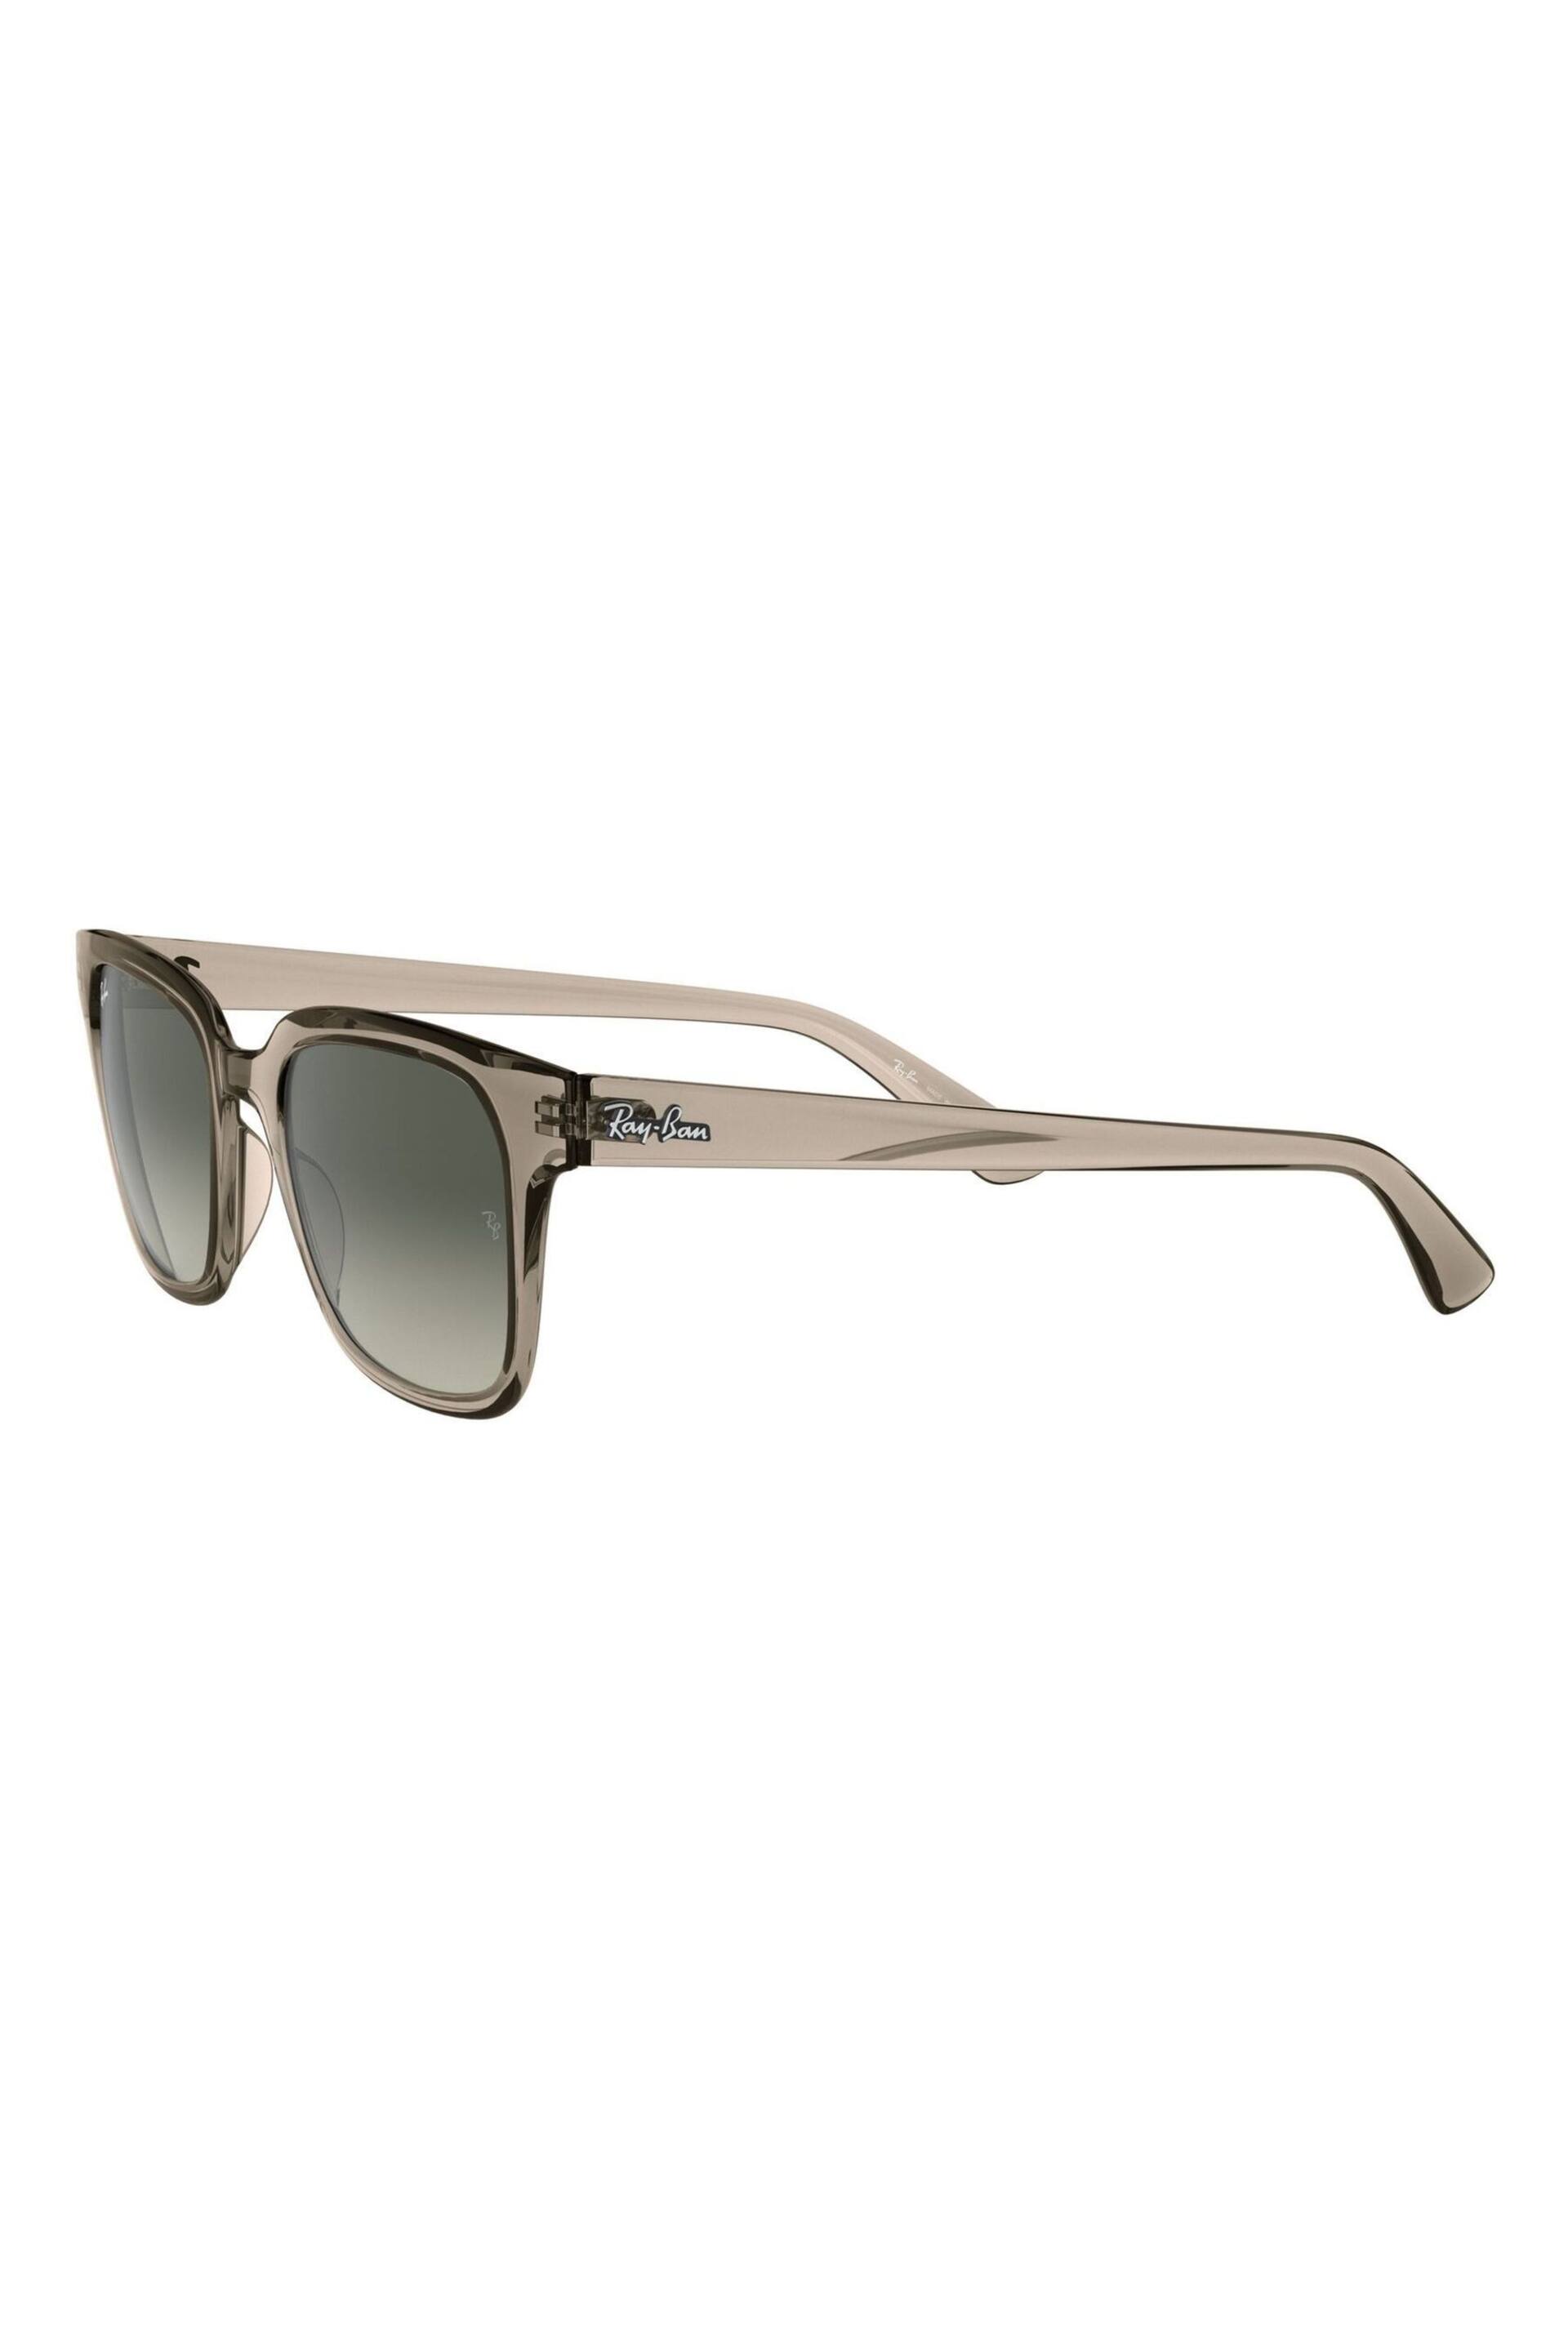 Ray-Ban RB4323 Wayfarer Sunglasses - Image 8 of 11